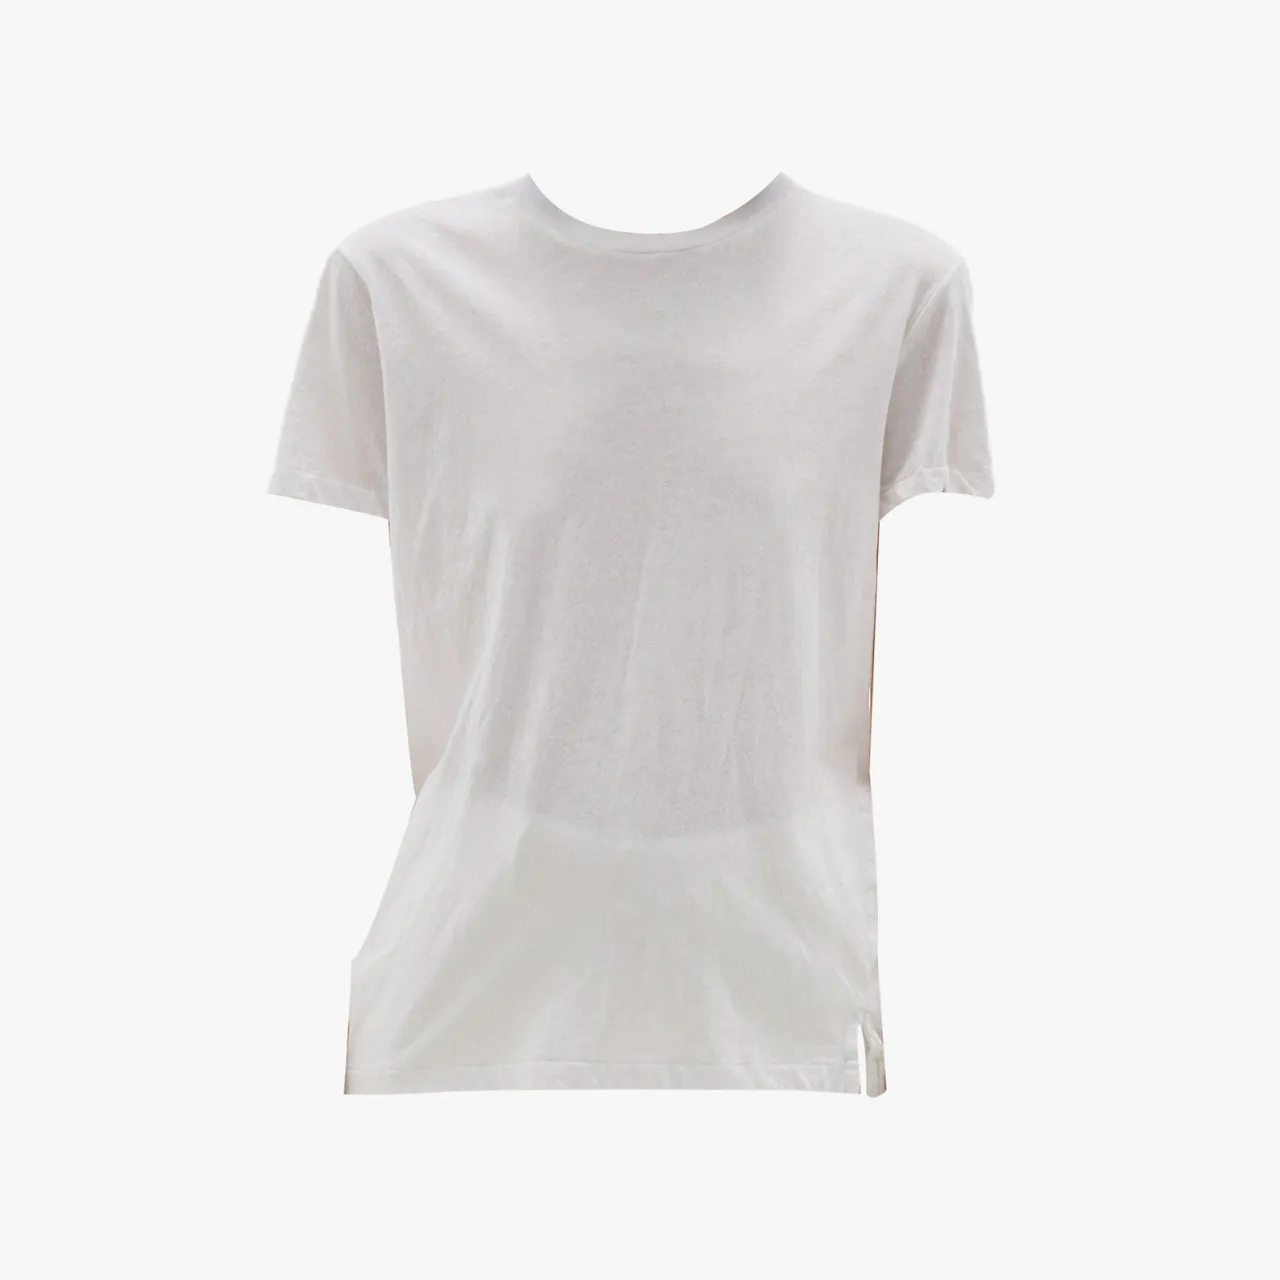 Những mẫu T-shirts trắng được gợi ý bởi Vogue P2